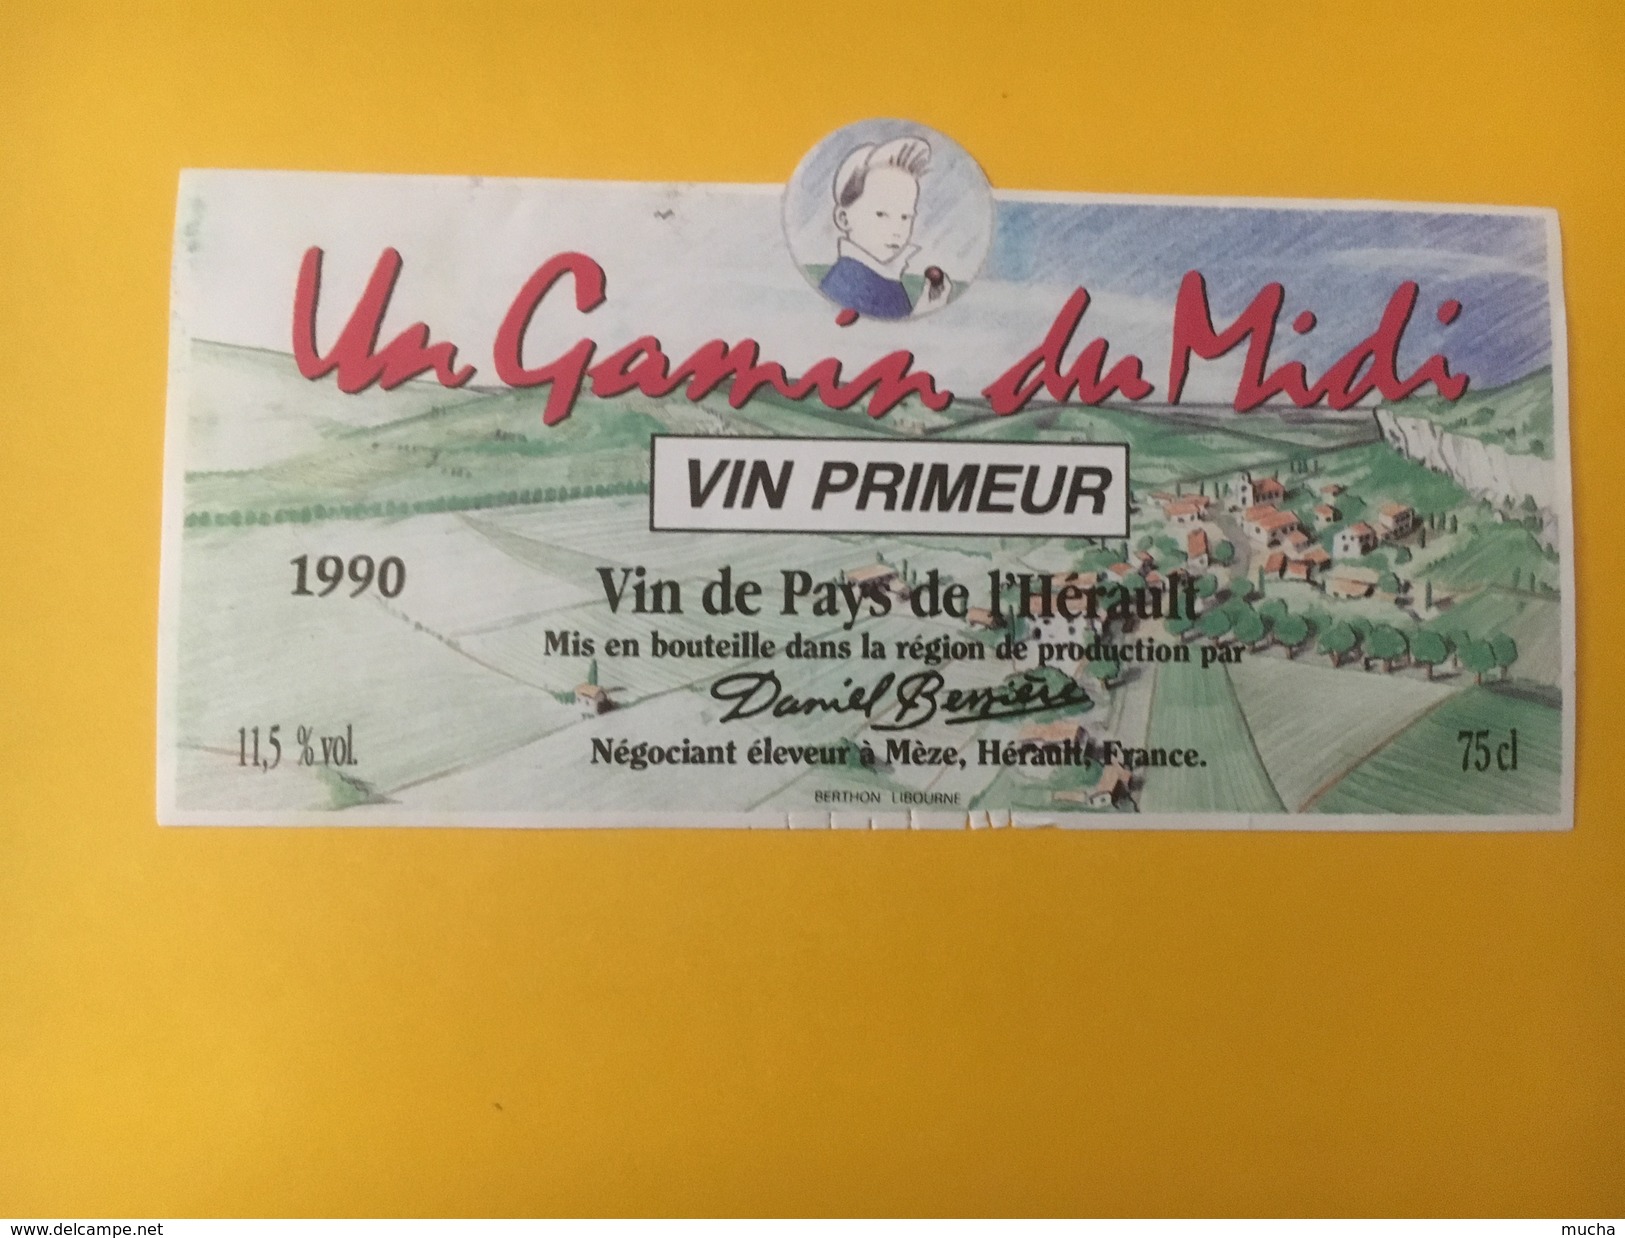 4866 - Un Gamin Du Midi Vin Primeur 1990 Vin De Pays De L'Hérault - Languedoc-Roussillon